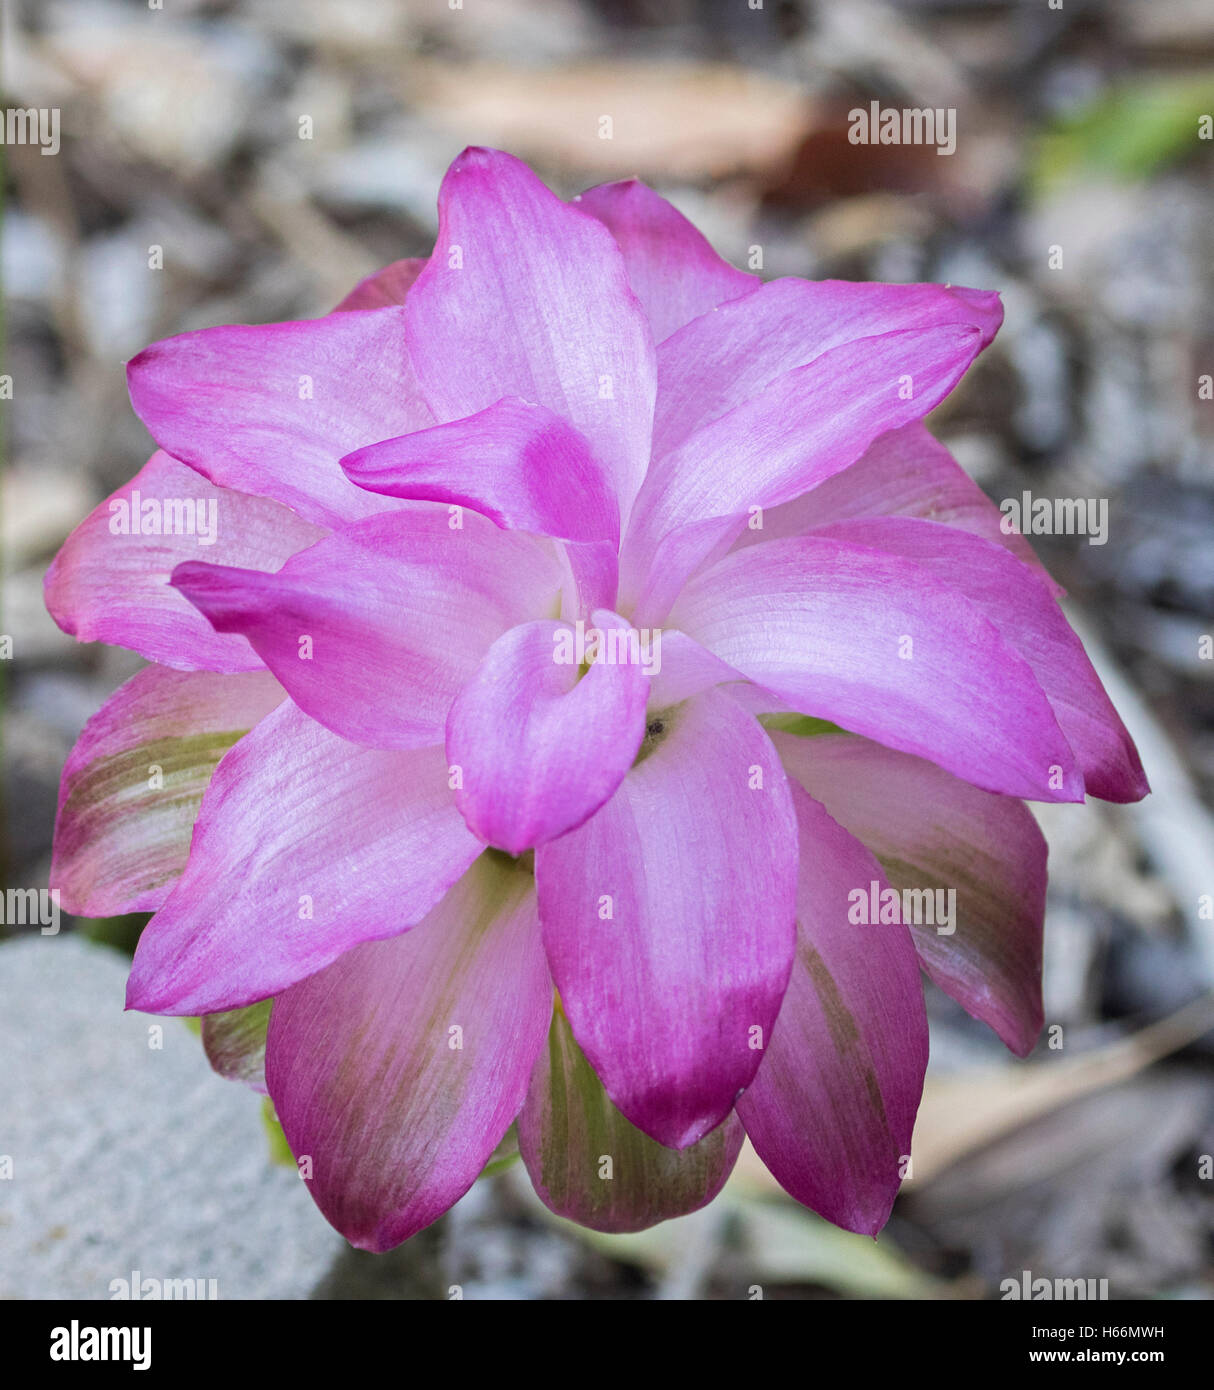 Fleur rose vif spectaculaire de Curcuma, une espèce de gingembre d'ornement contre gris clair au fond brun Banque D'Images